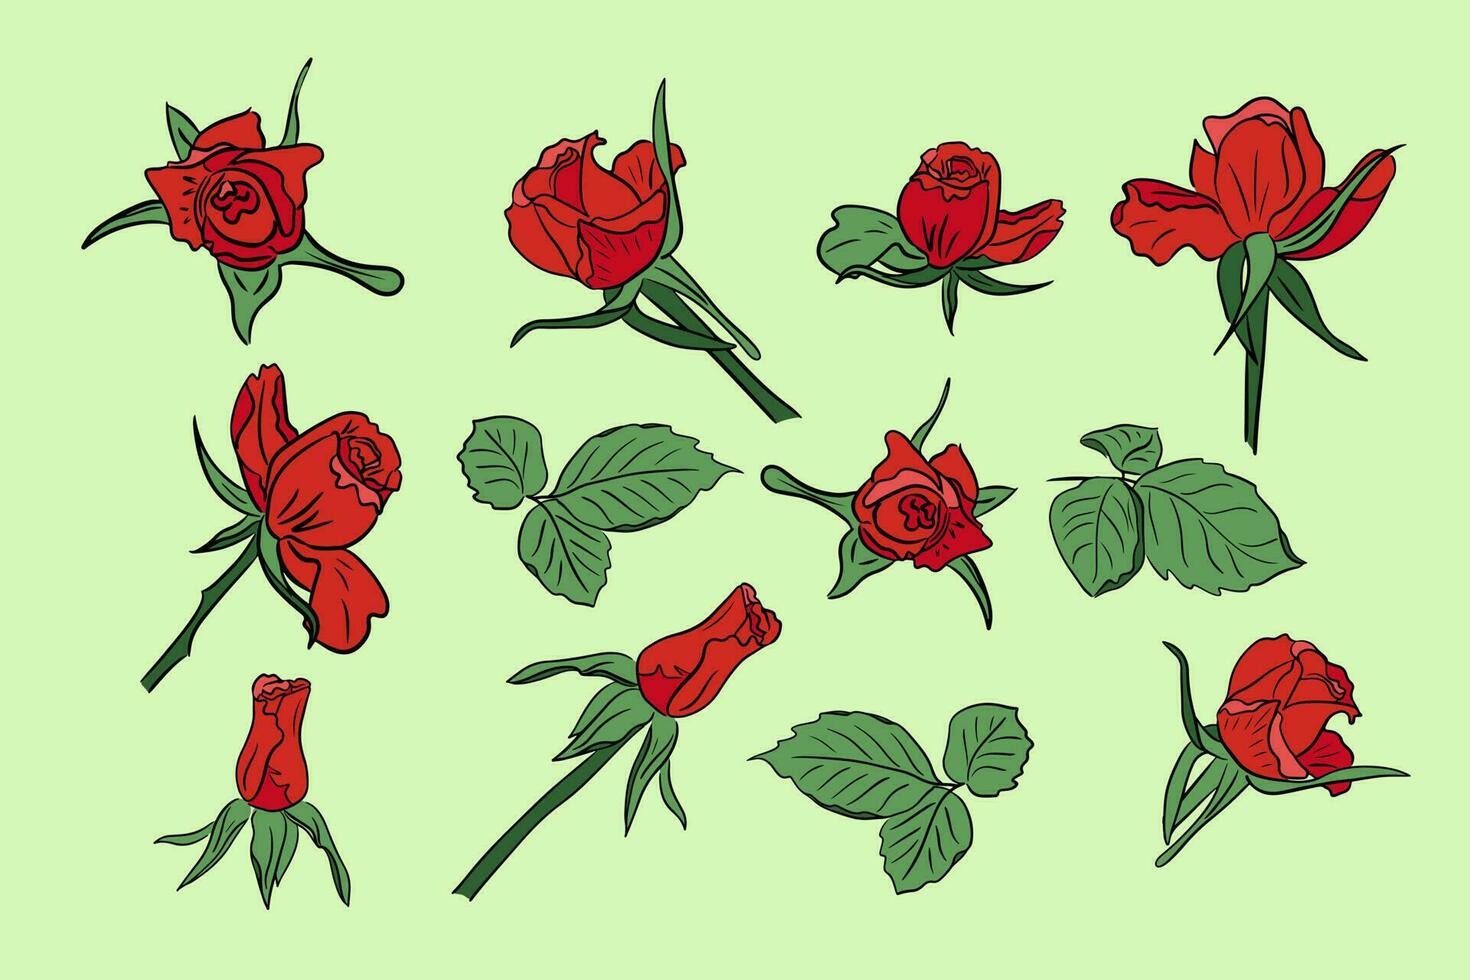 impostato di rosso mano disegnato vettore Rose con le foglie. colorato fiori e le foglie con nero lineamenti. isolato illustrazione. può essere Usato come adesivi, tatuaggio, modello, sfondo, involucro carta, confine